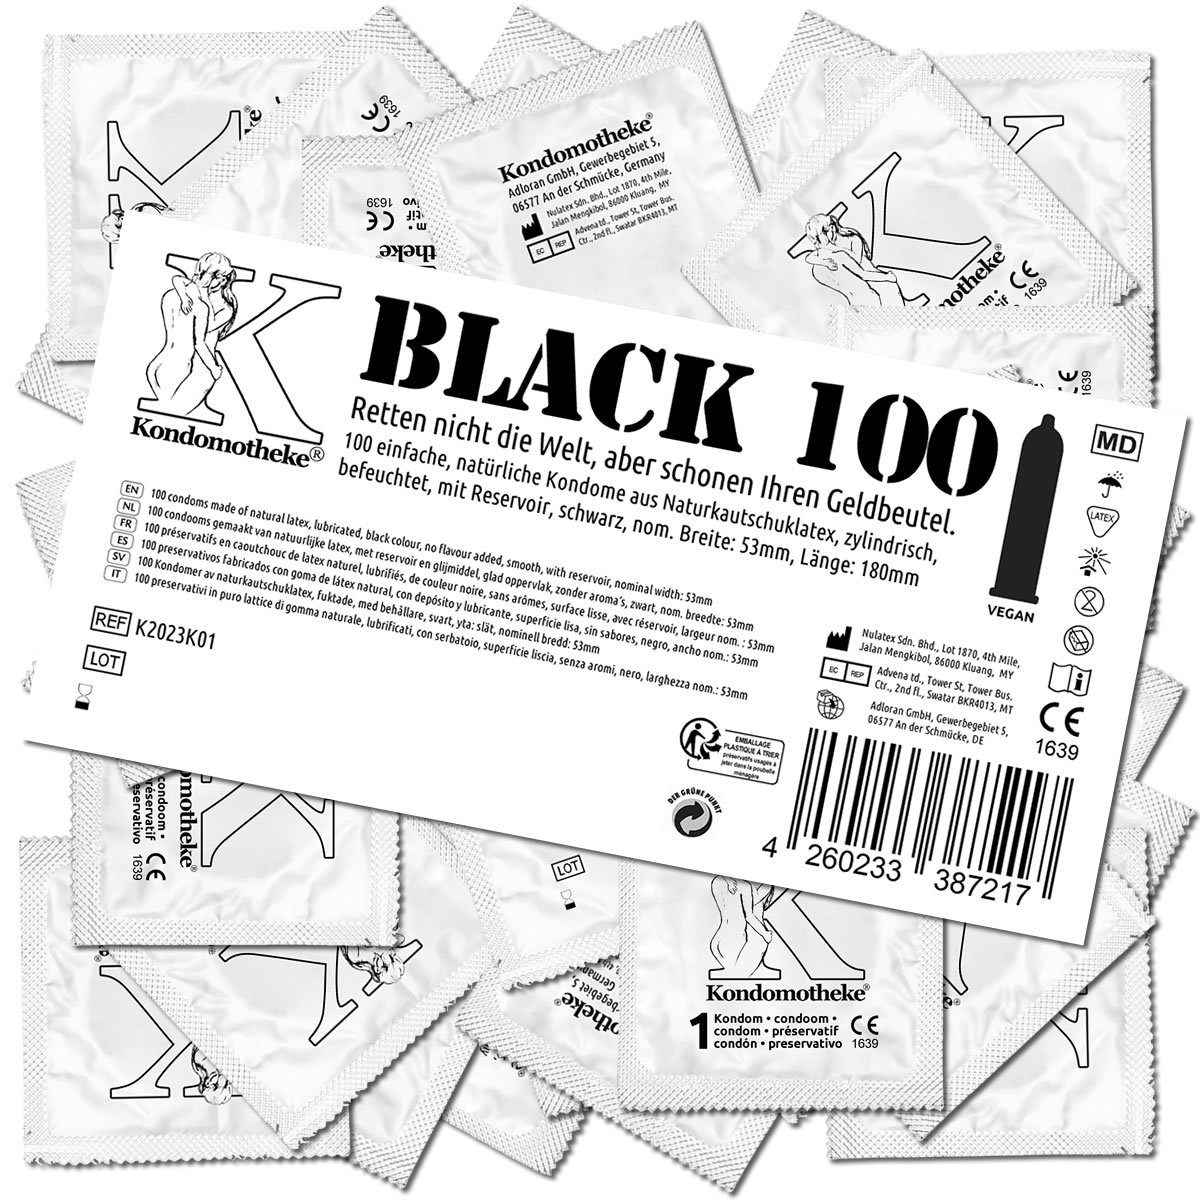 Kondomotheke Kondome BLACK (schwarze Kondome ohne Extras, für jede Stellung) Beutel mit, 100 St., dunkle Kondome -, die preiswerten Kondome zum Super-Sparpreis